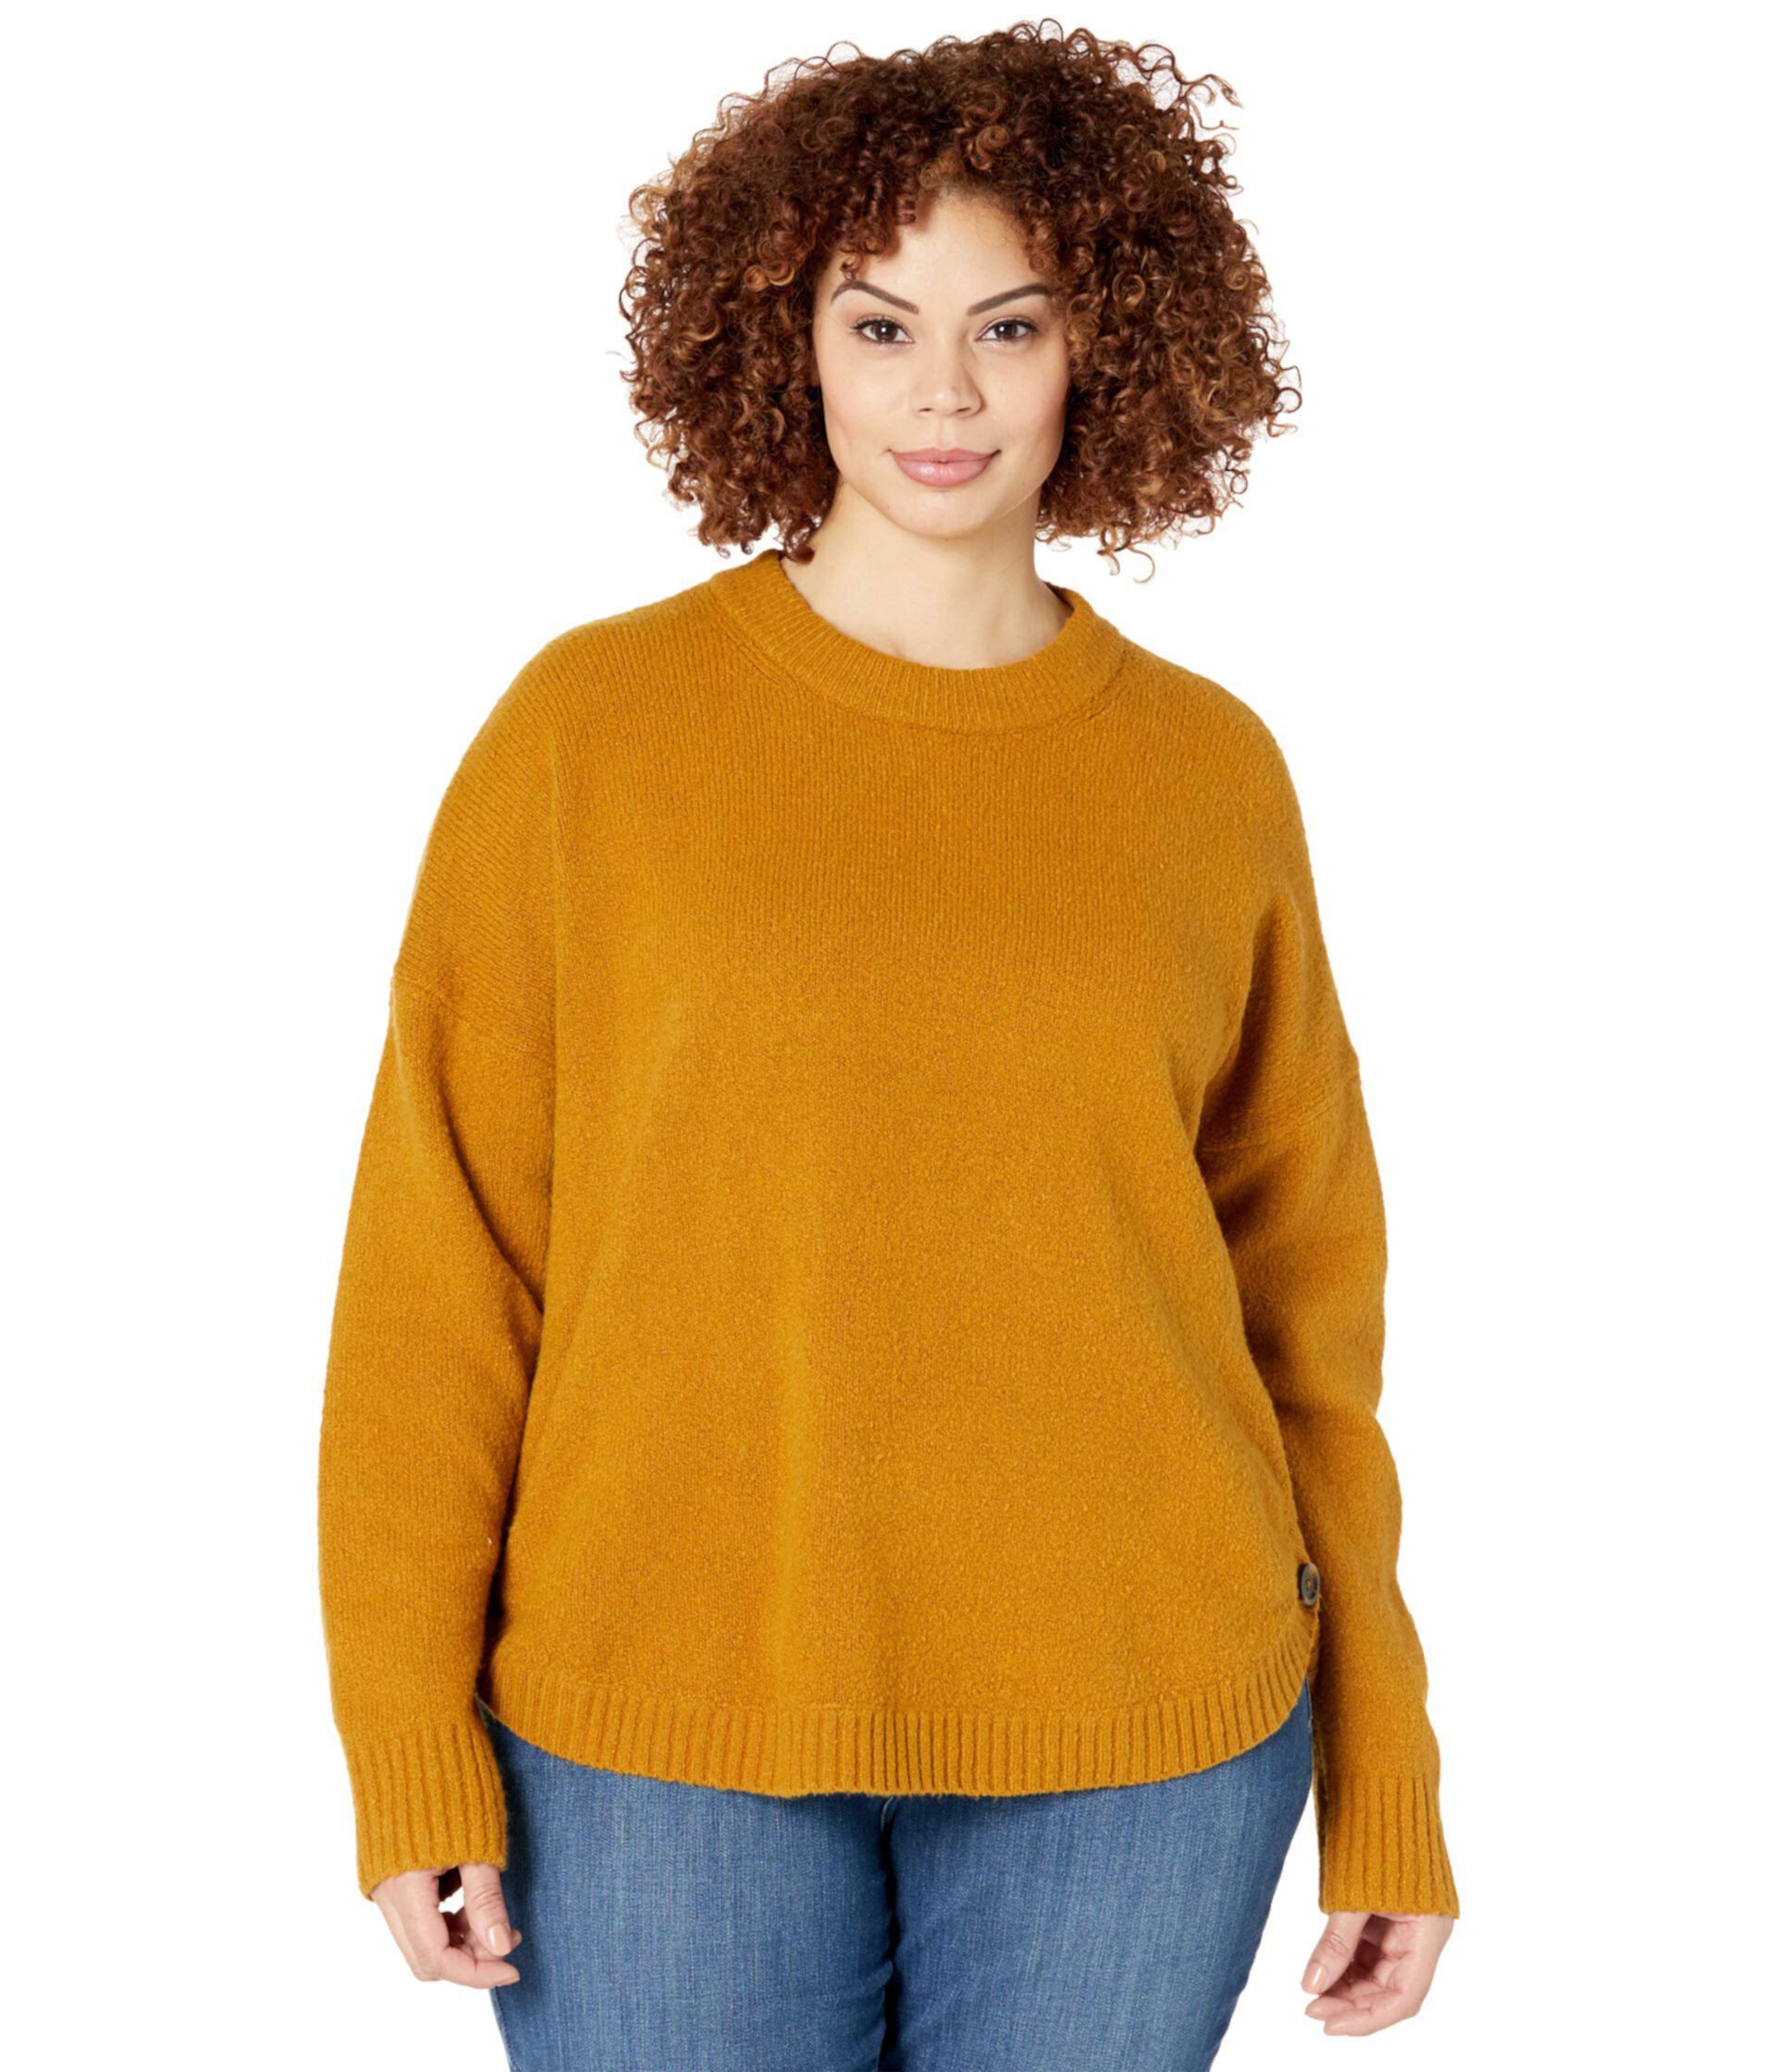 Пуловер больших размеров на пуговицах с боковыми пуговицами Madewell